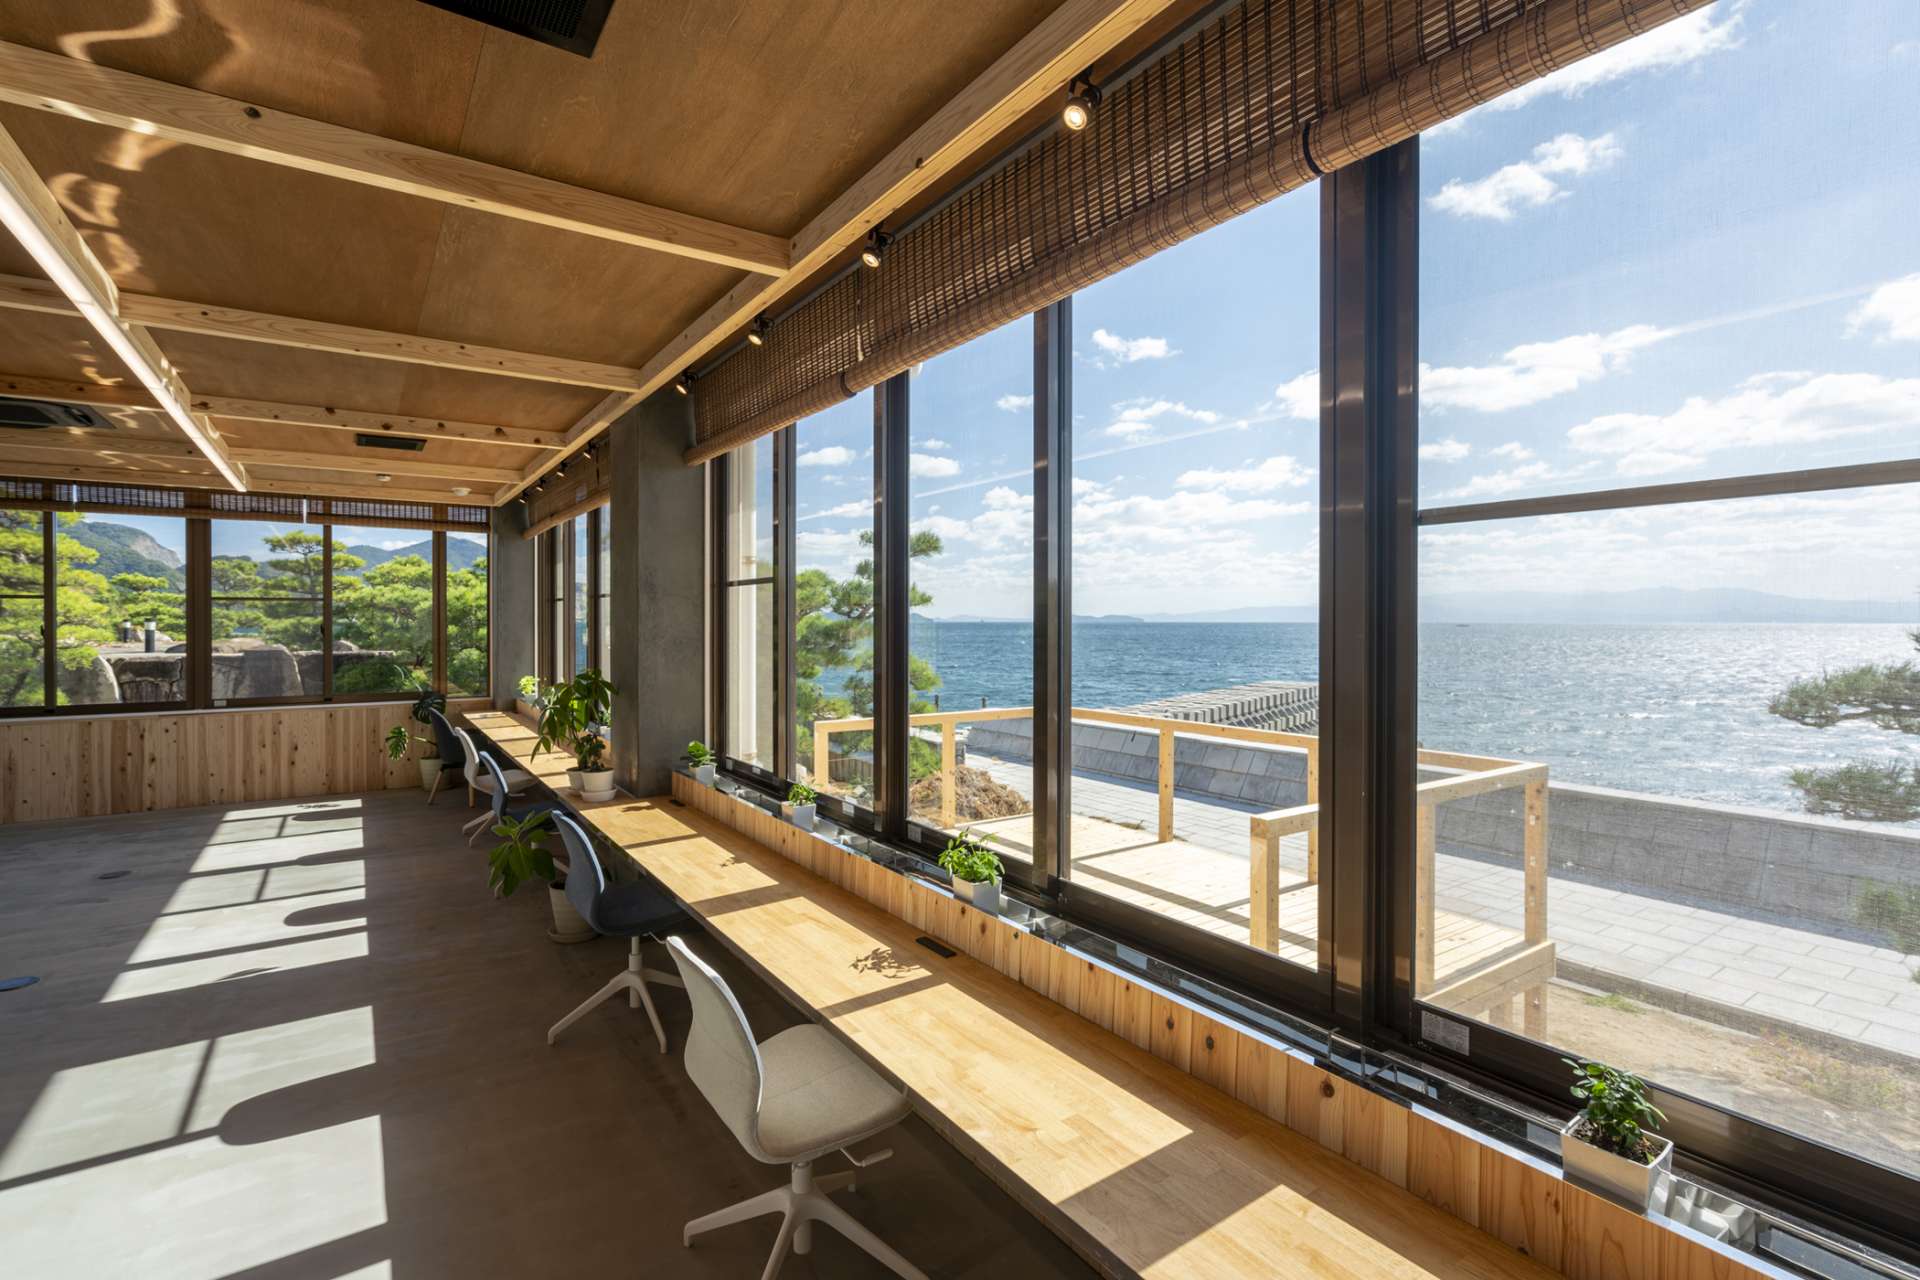 オフィスをデザインすることは、楽しく仕事ができ、創造する環境づくりをすること。広島市でおしゃれなオフィスデザインの設計はasazu design office